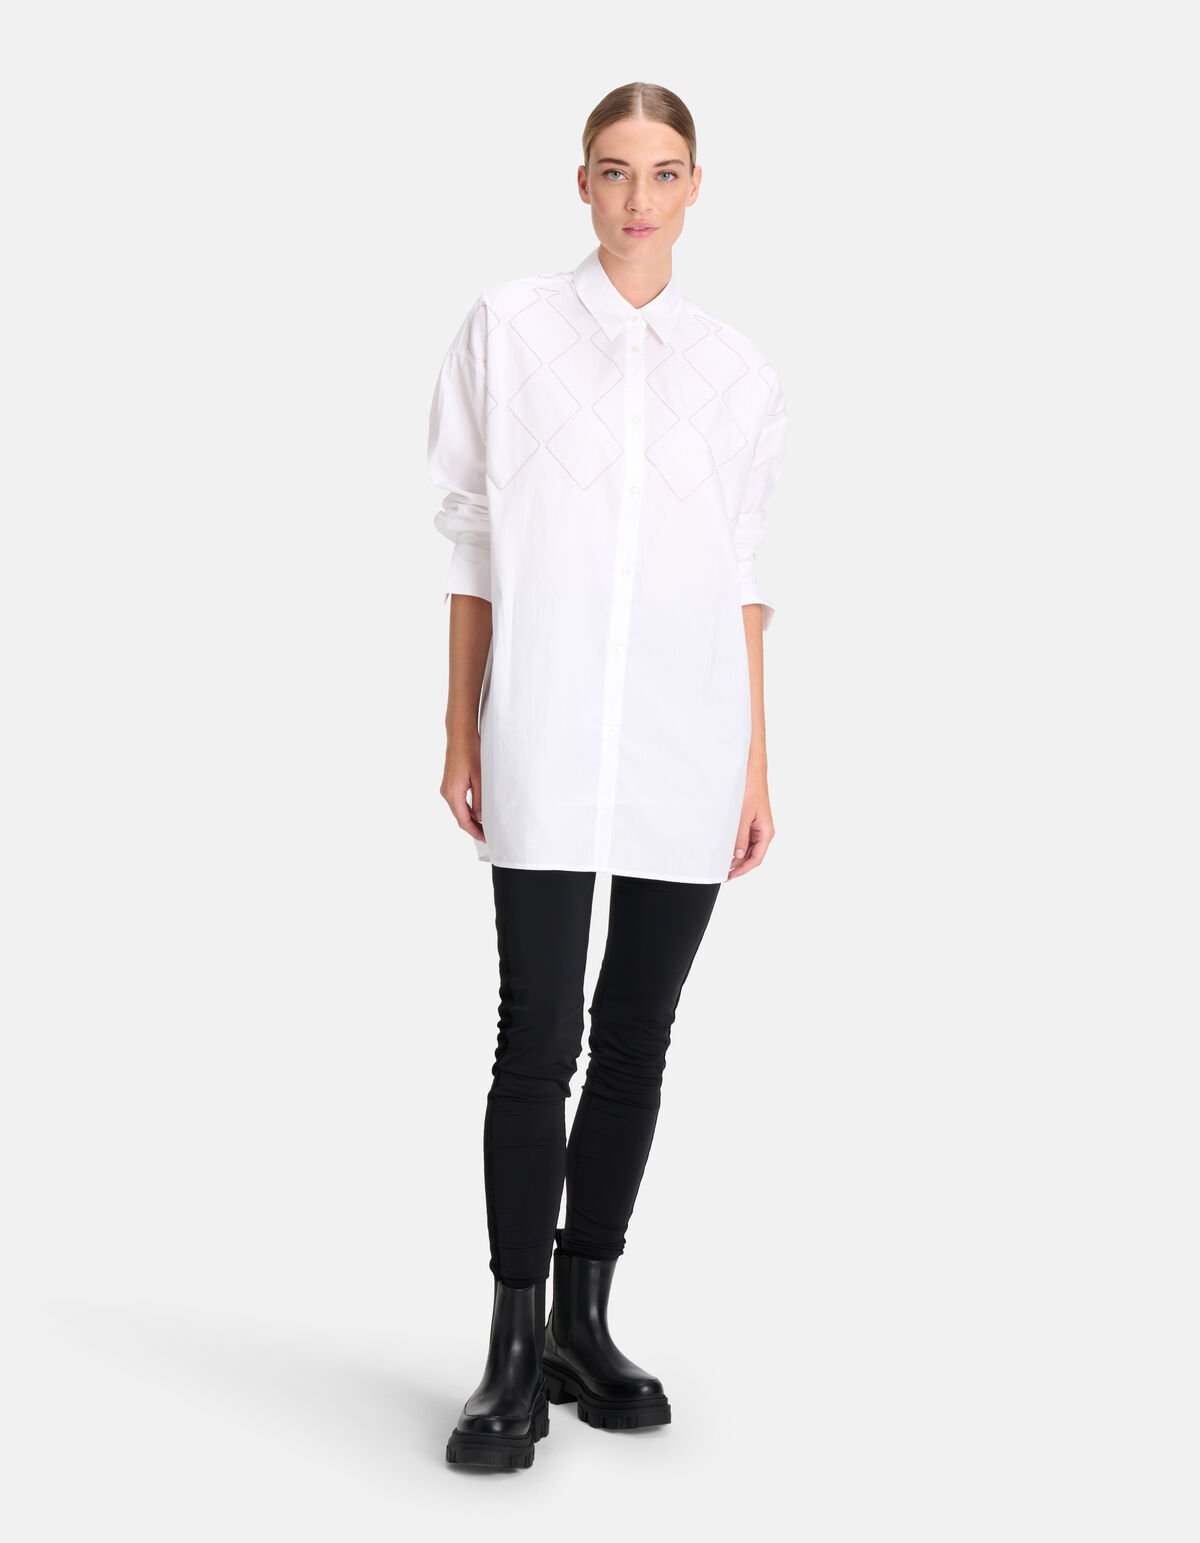 Ketten-Popeline-Bluse Weiß von Mieke SHOEBY WOMEN